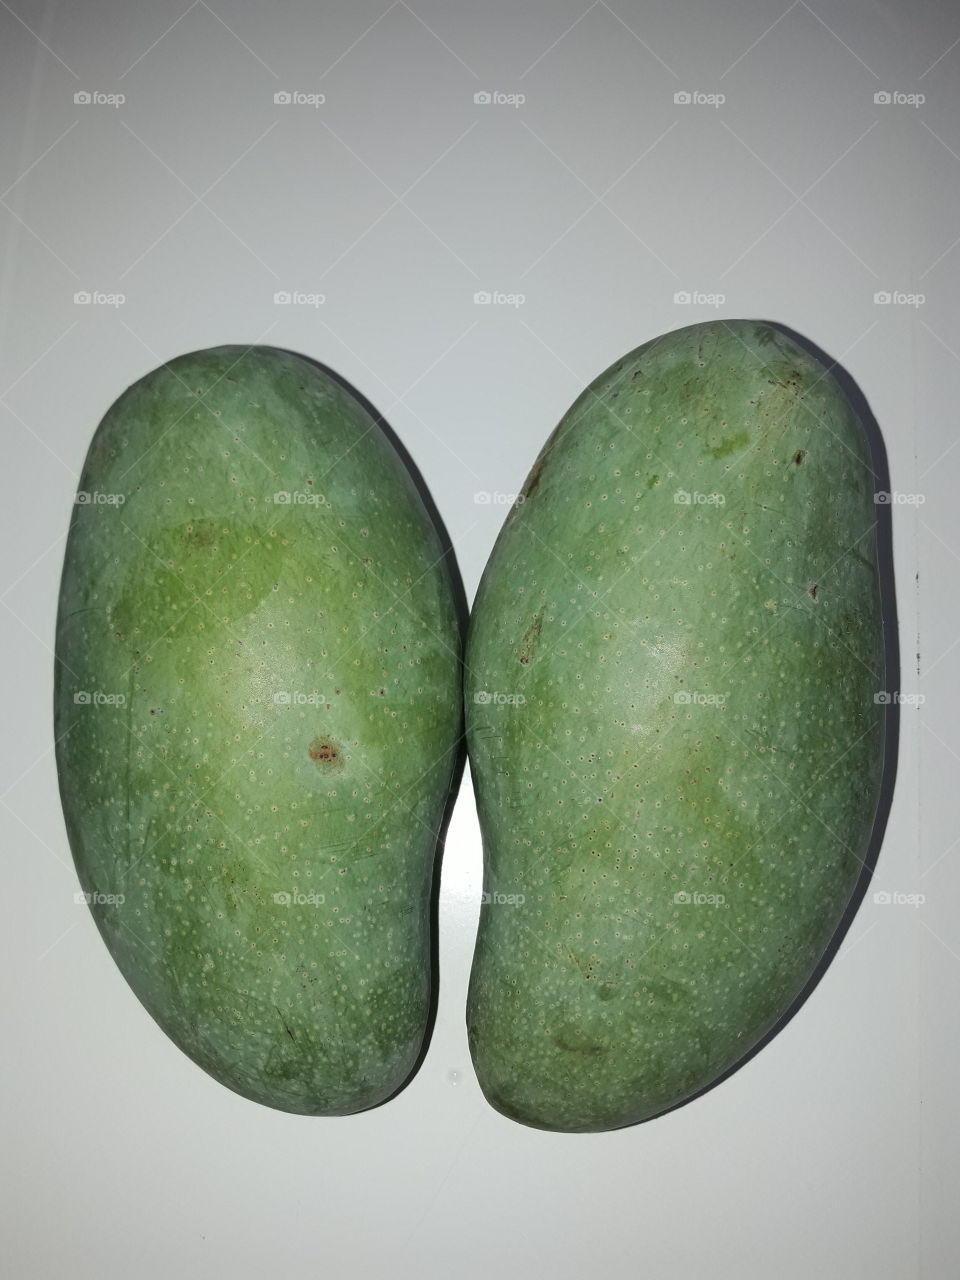 a pair of thai green mangoes "mamuang kiew sa wei"